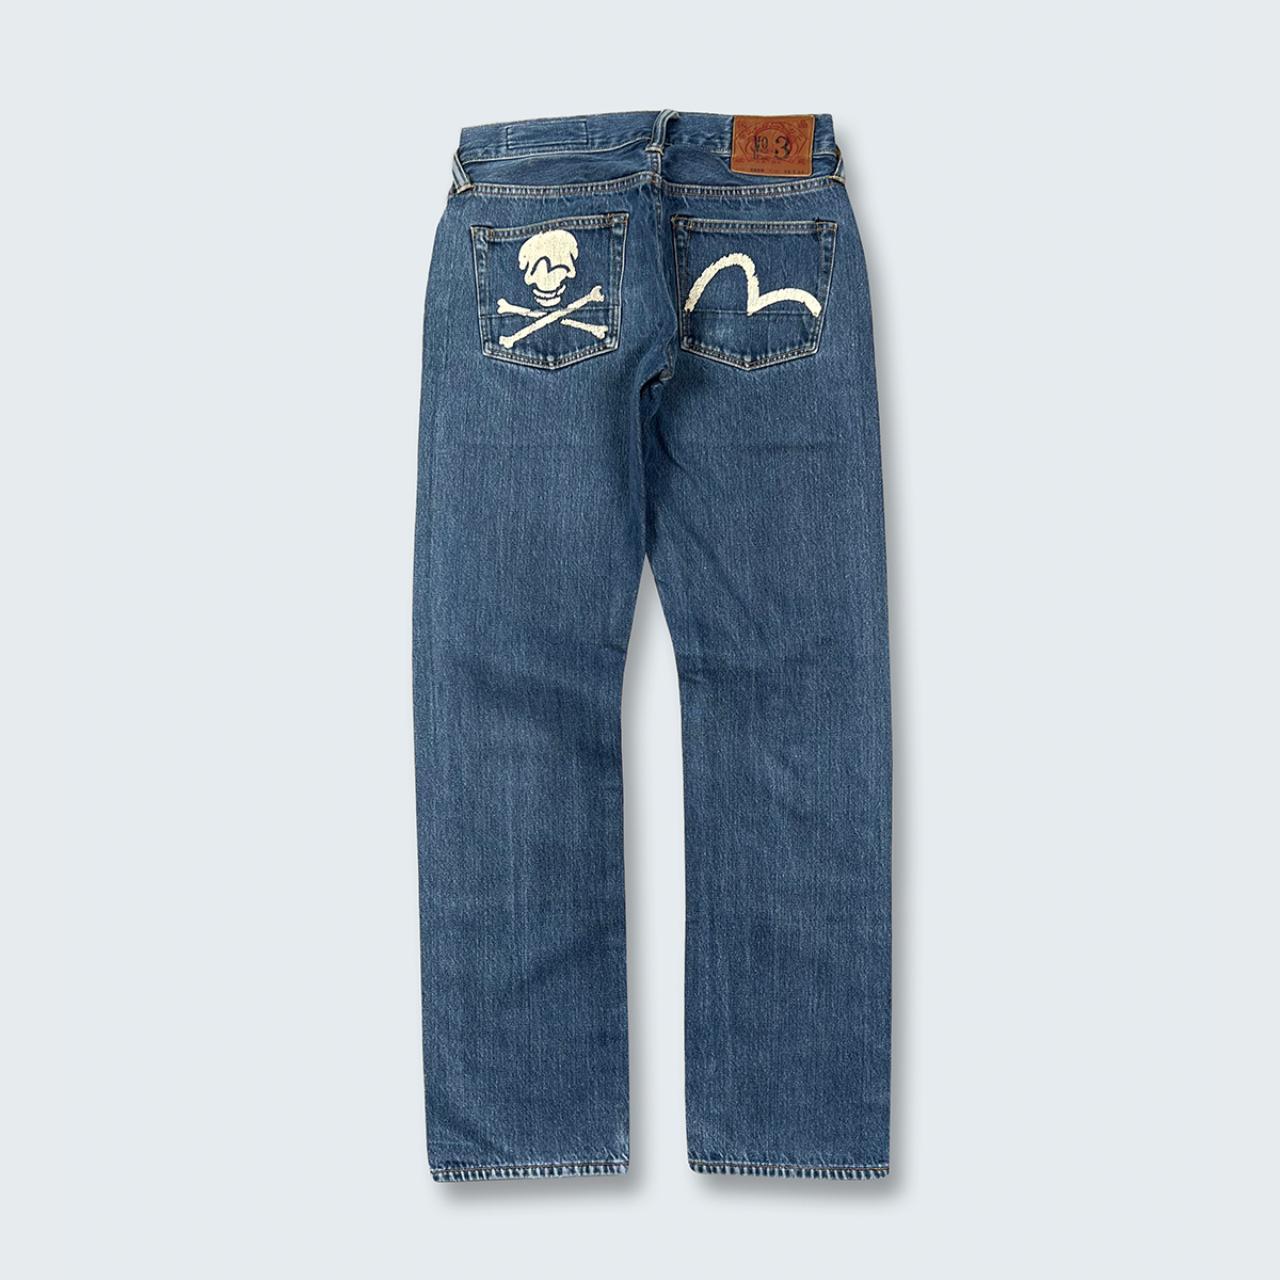 Authentic Vintage Evisu Jeans  (27")